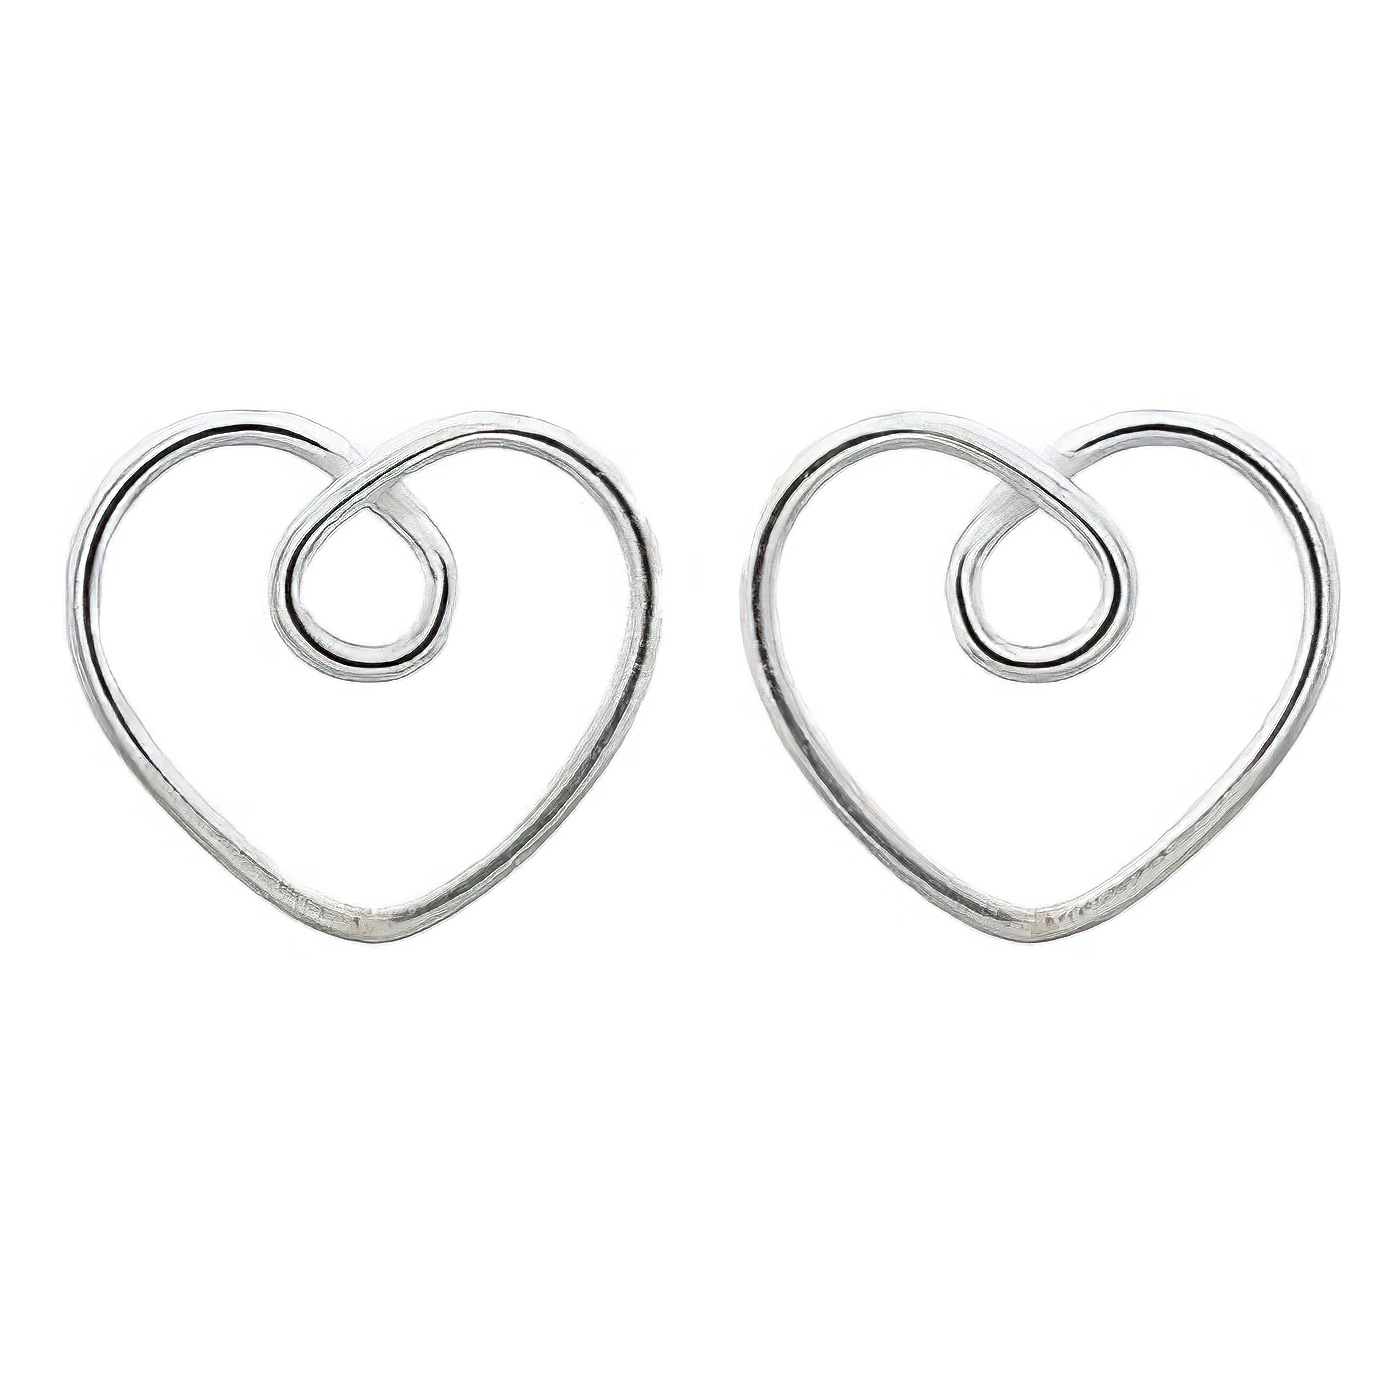 Heart Tie Knot 925 Silver Stud Earrings by BeYindi 